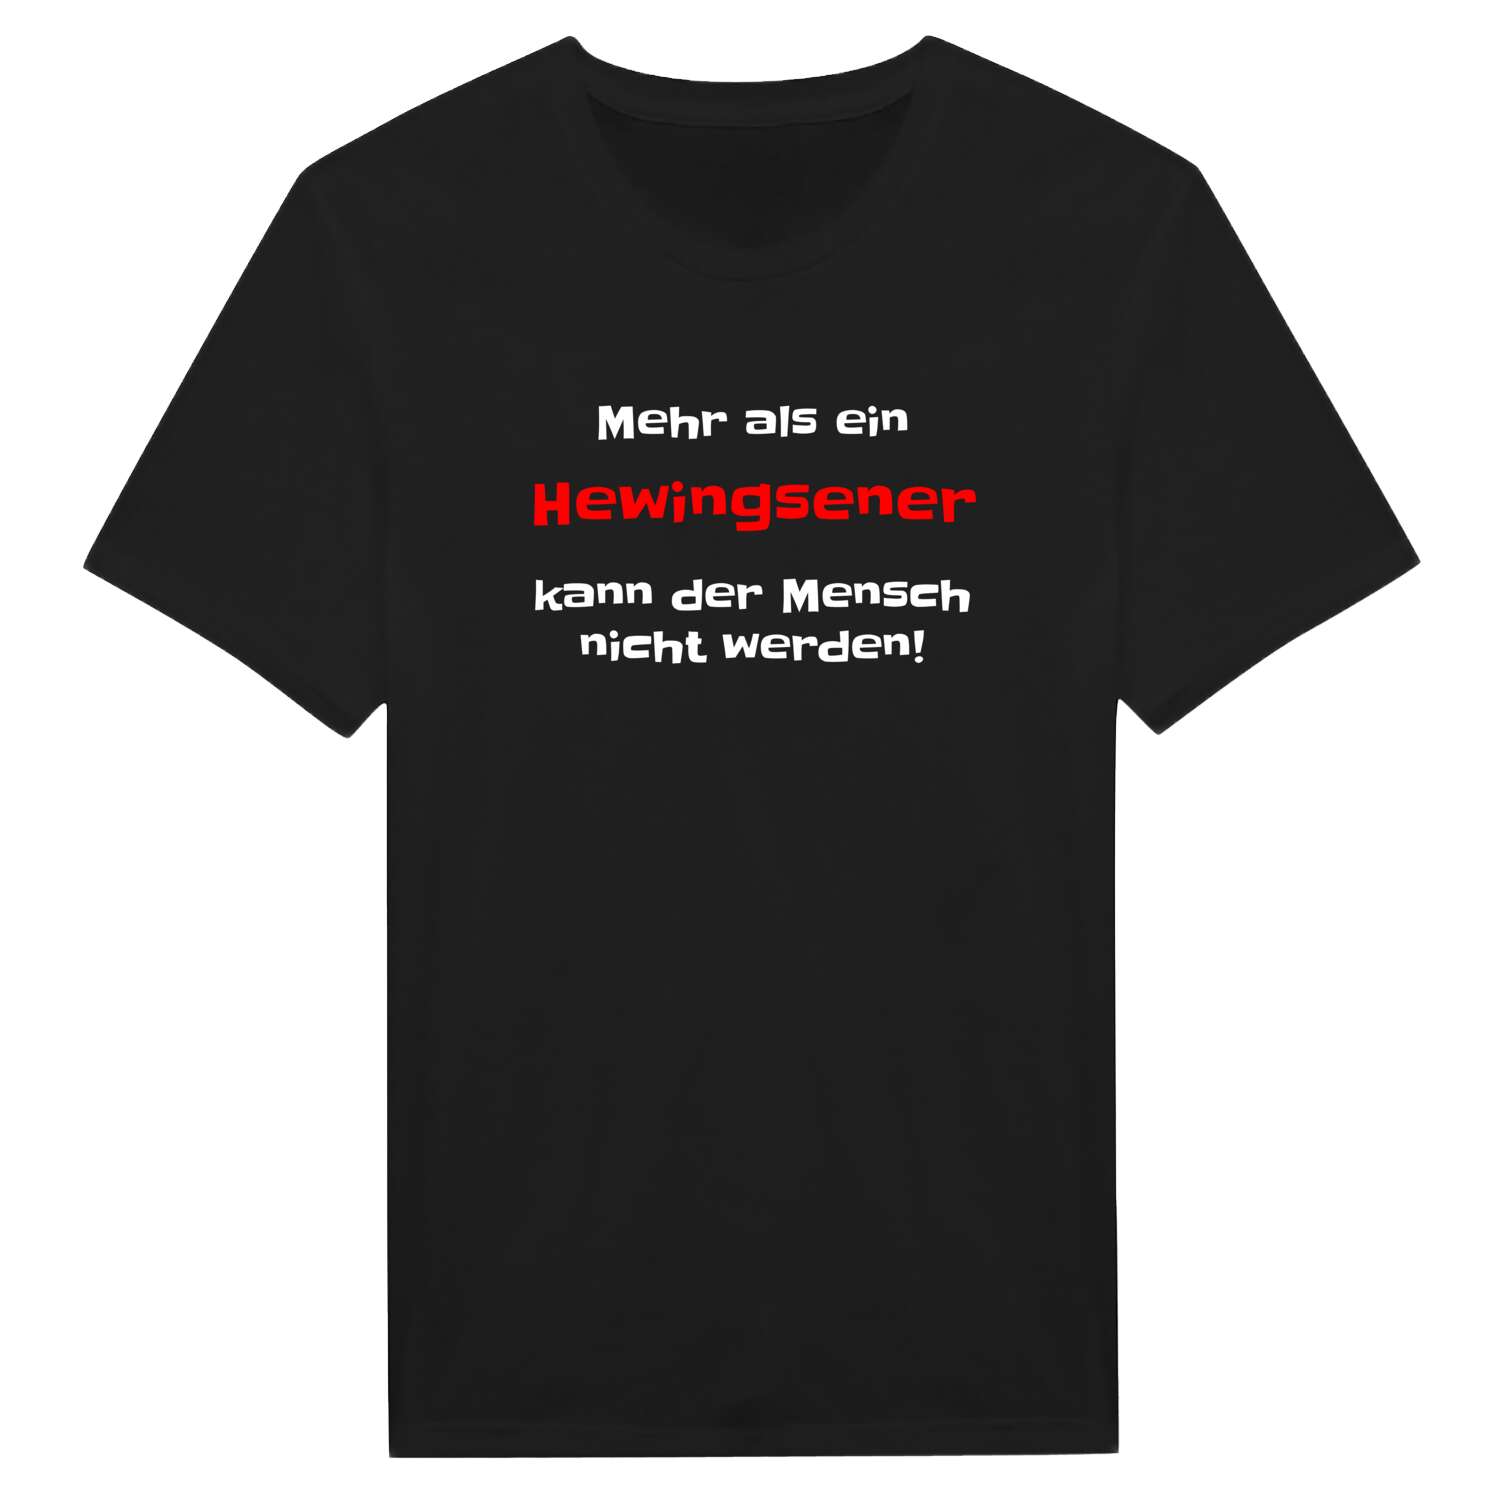 Hewingsen T-Shirt »Mehr als ein«